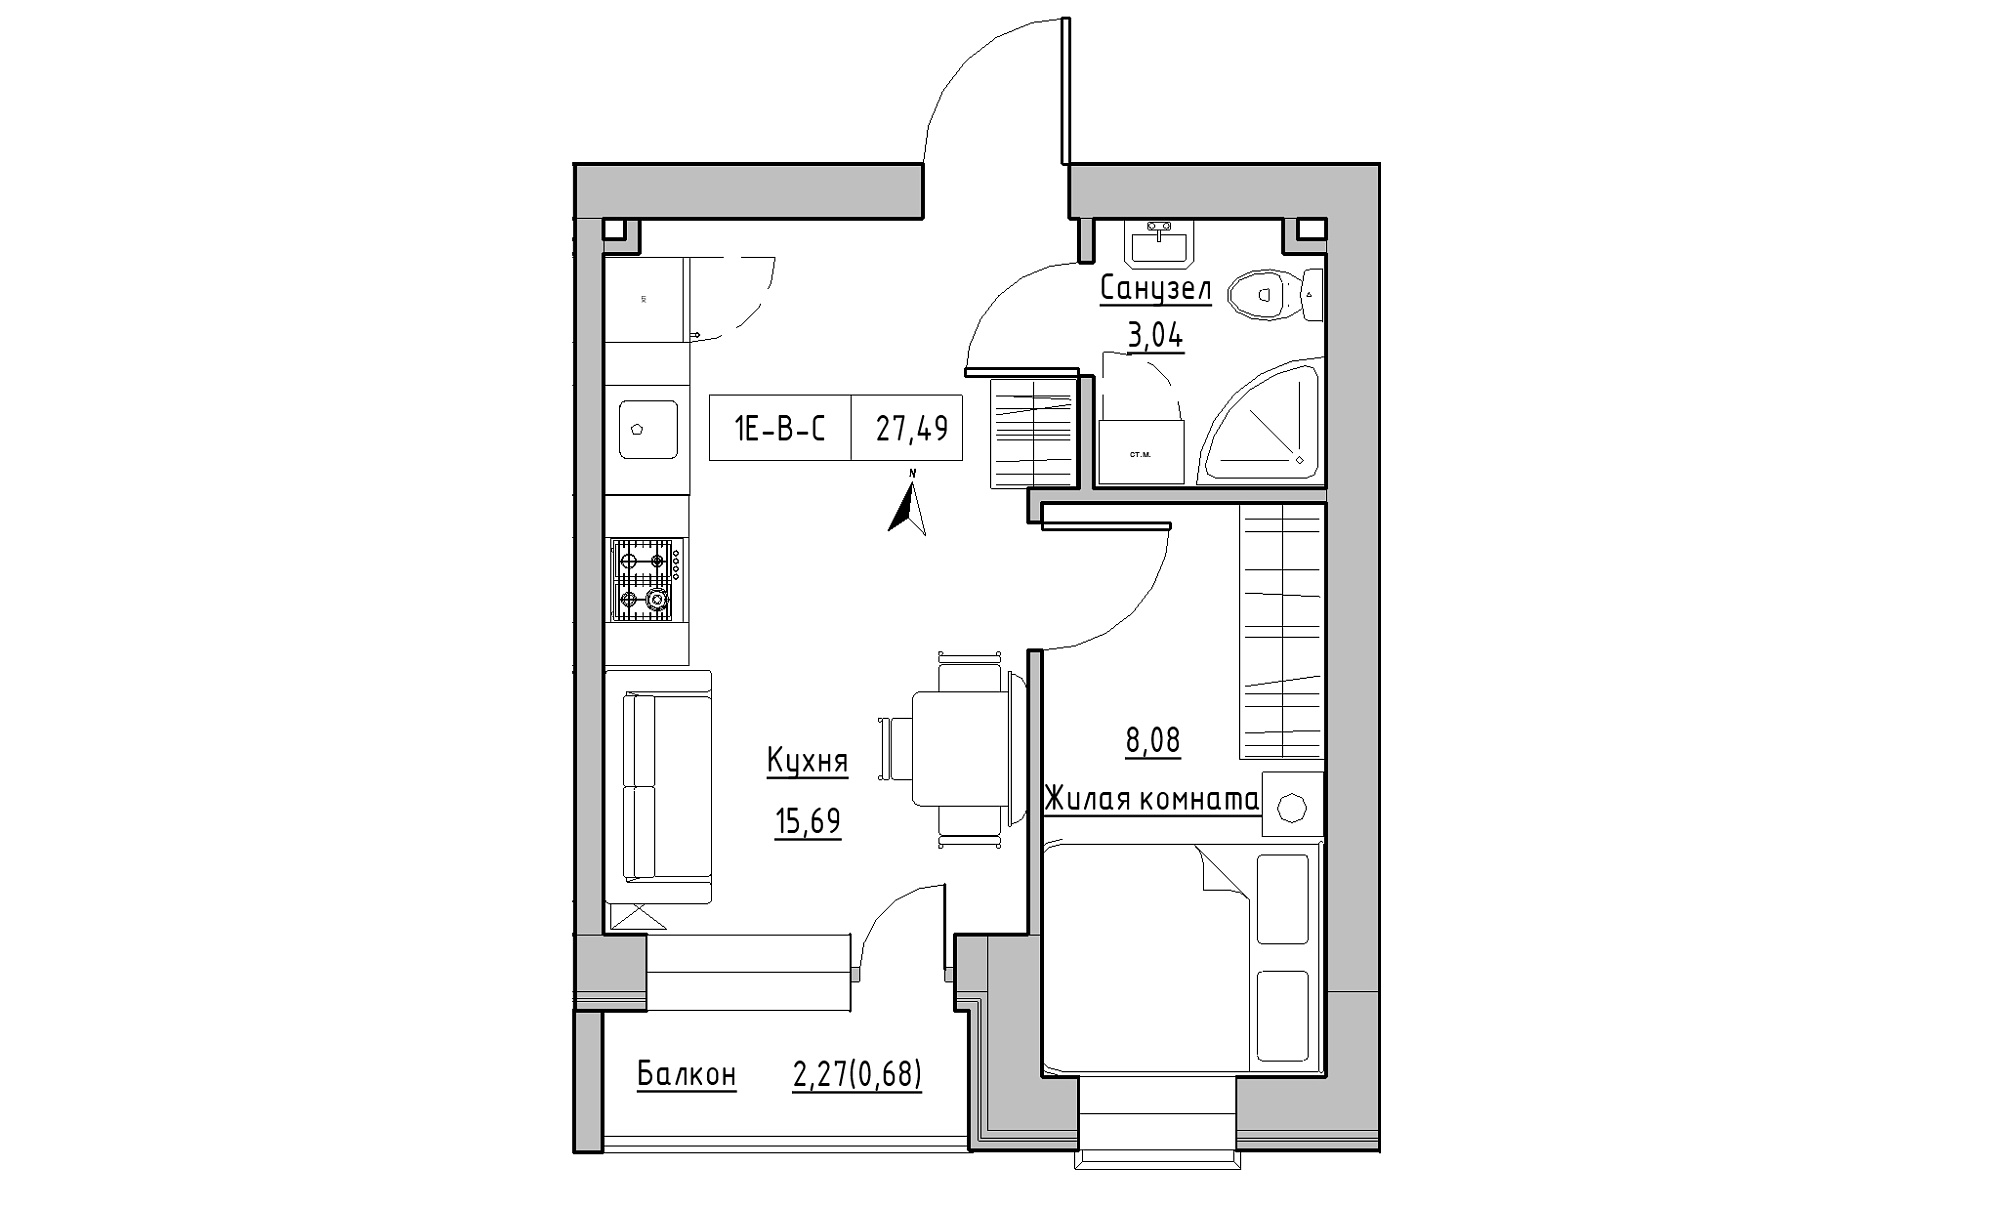 Планування 1-к квартира площею 27.49м2, KS-016-05/0007.